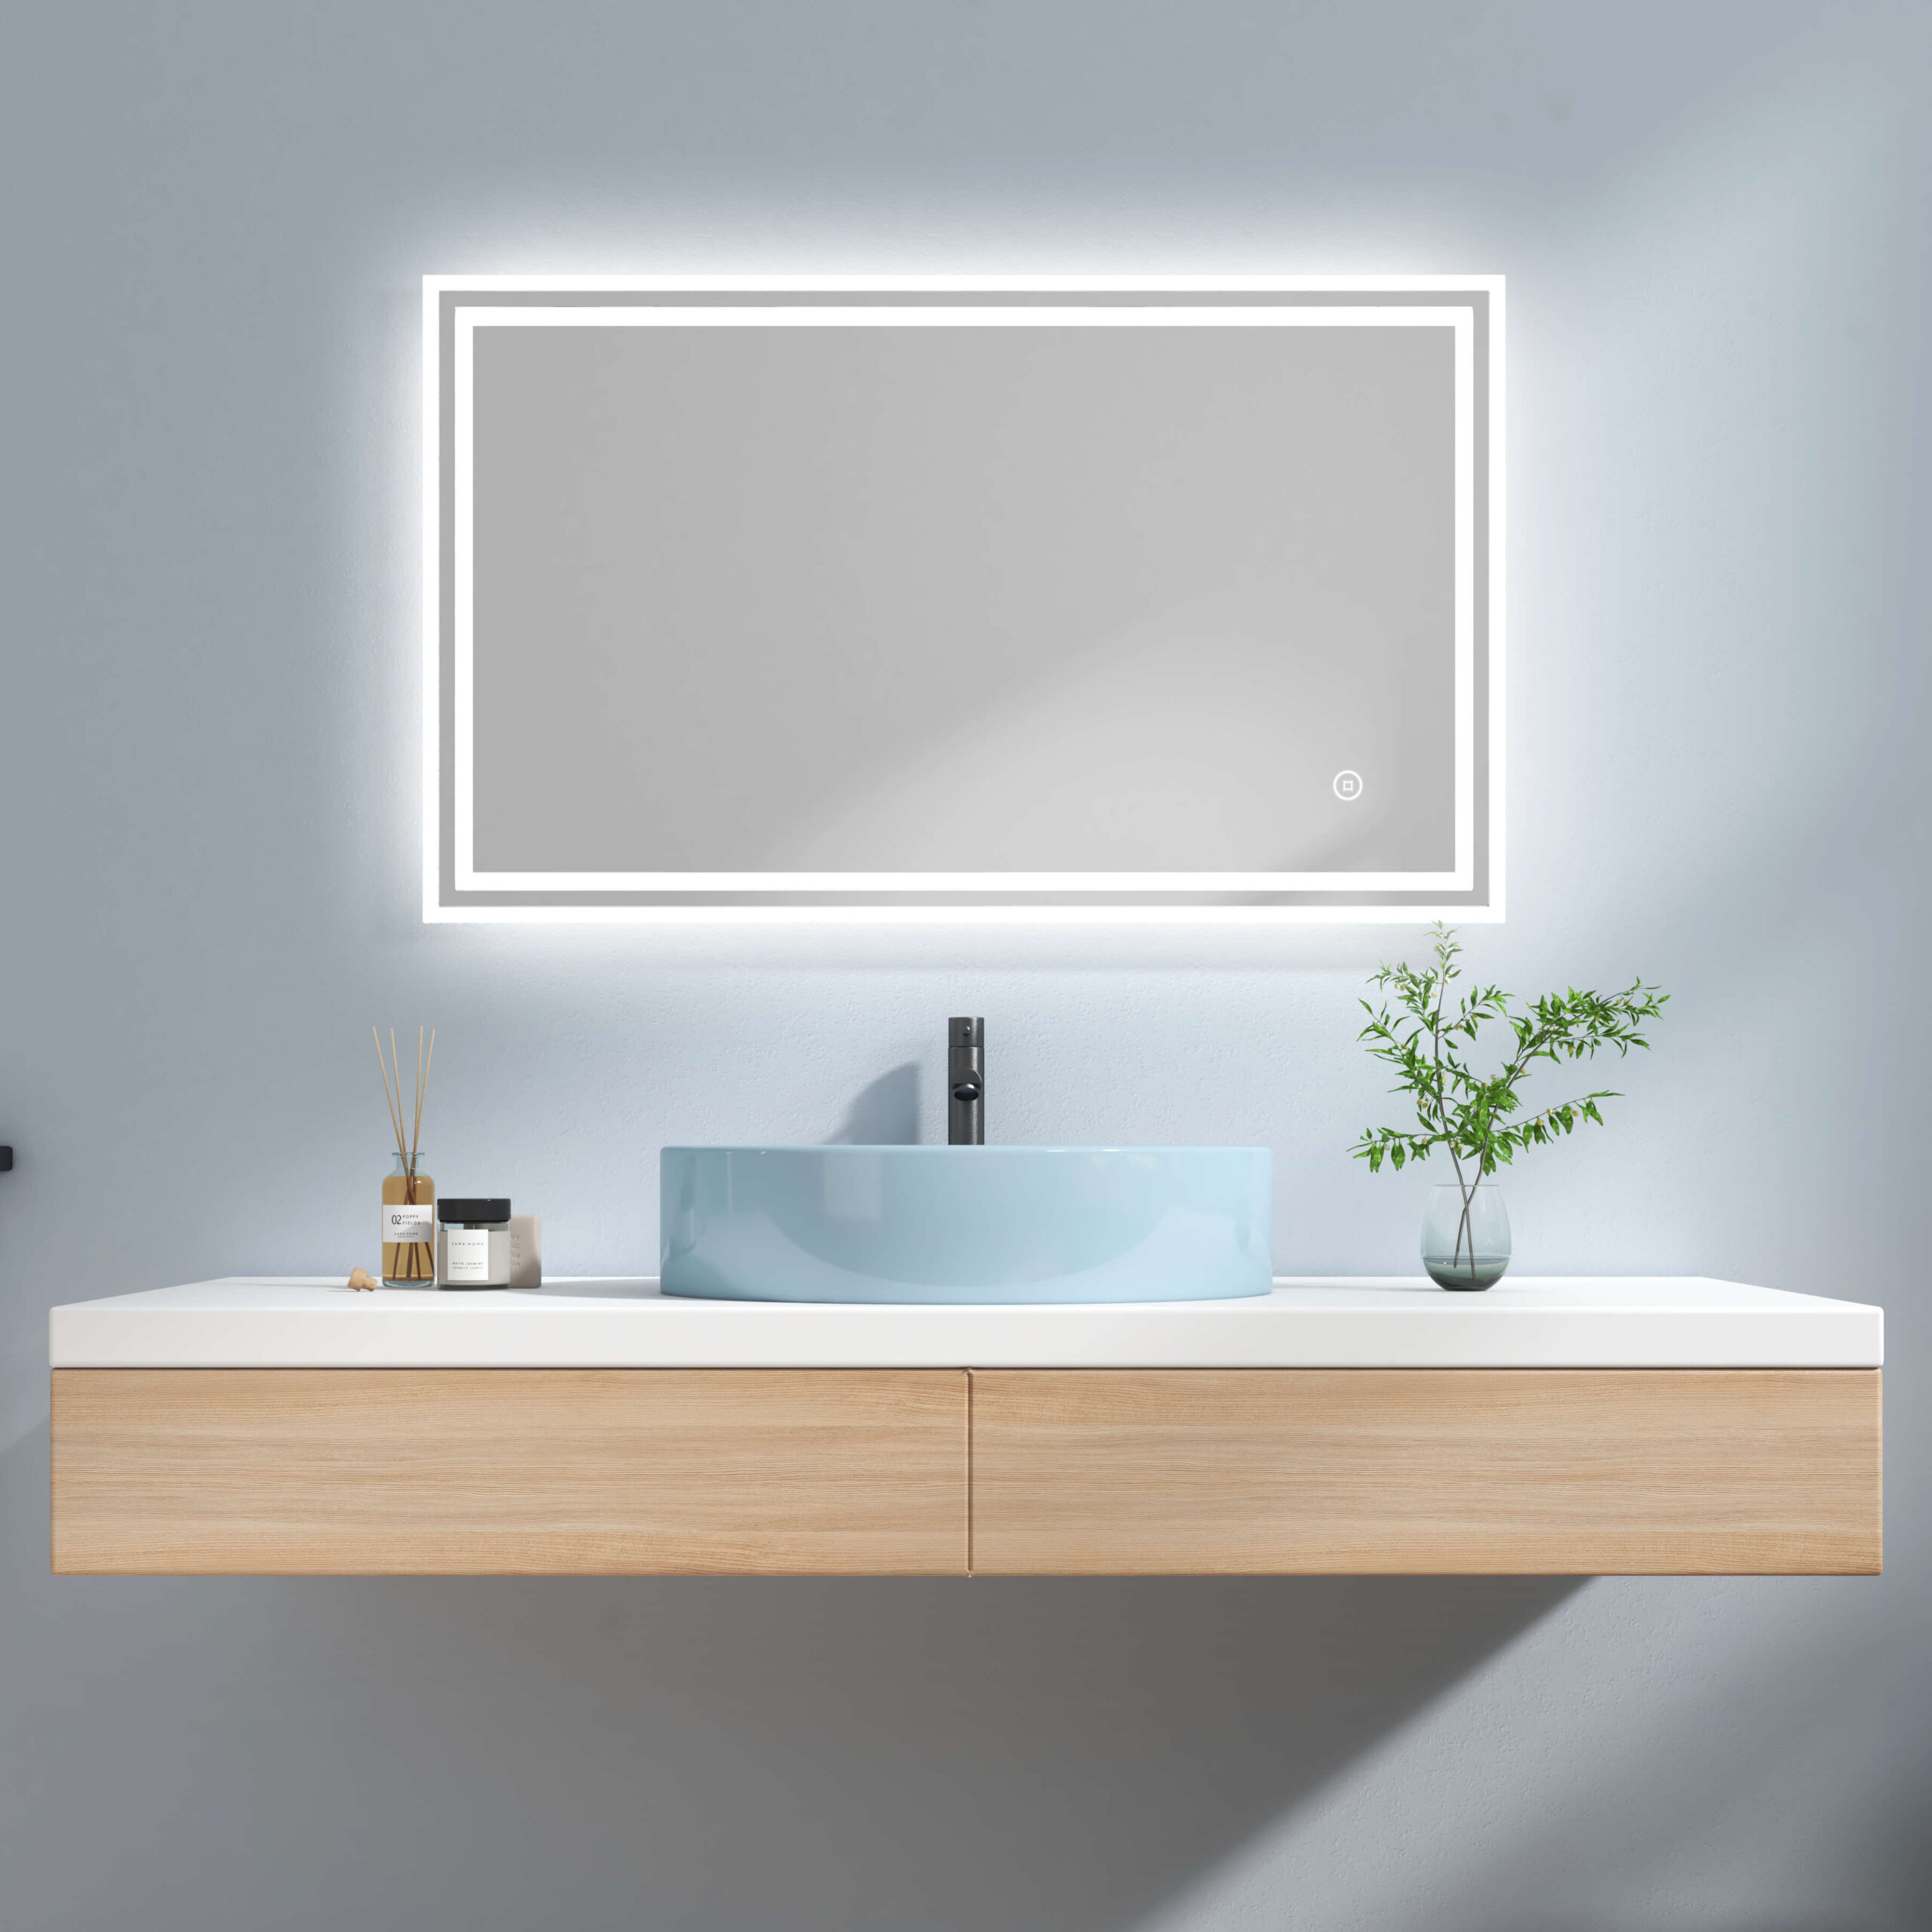 EMKE LM04 Badspiegel mit integrierter Beleuchtung und verschiedenen Funktionen, rechteckig 100×60+Touch+Kaltweiß+Anti-beschlag